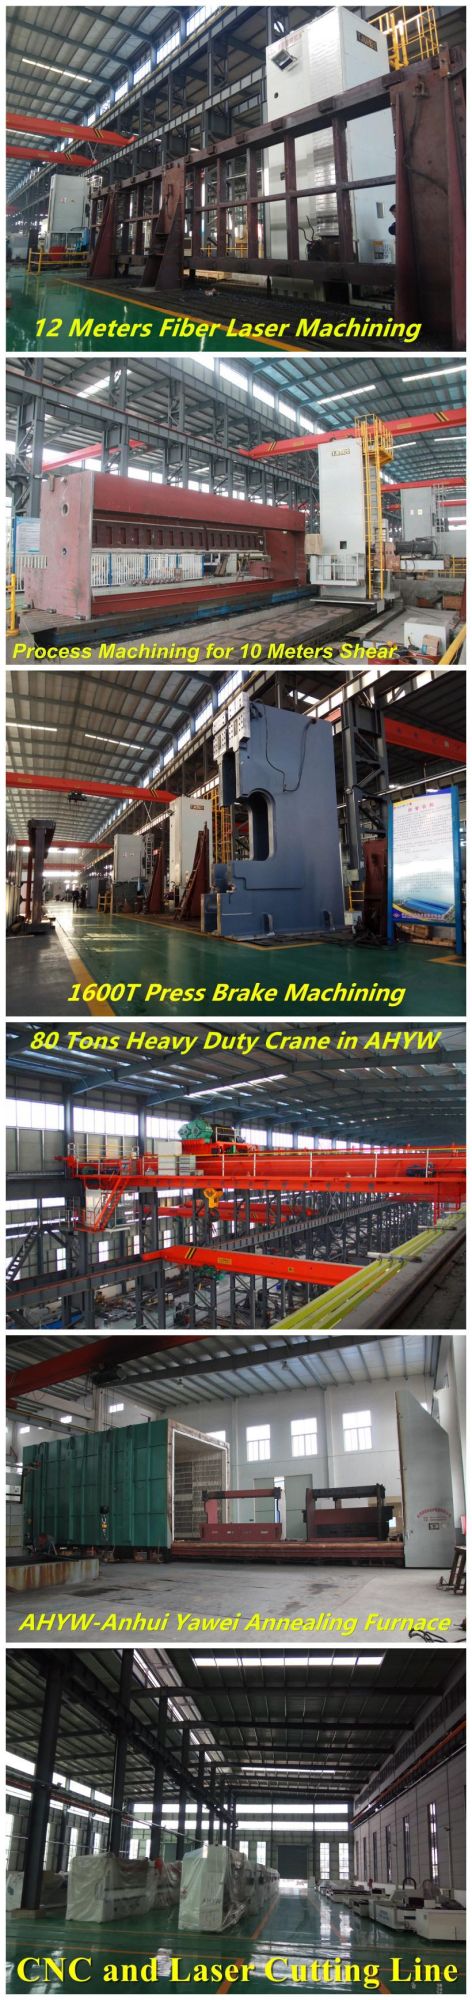 Steel Cutting Shears Machine From Anhui Yawei with Ahyw Logo for Metal Sheet Cutting